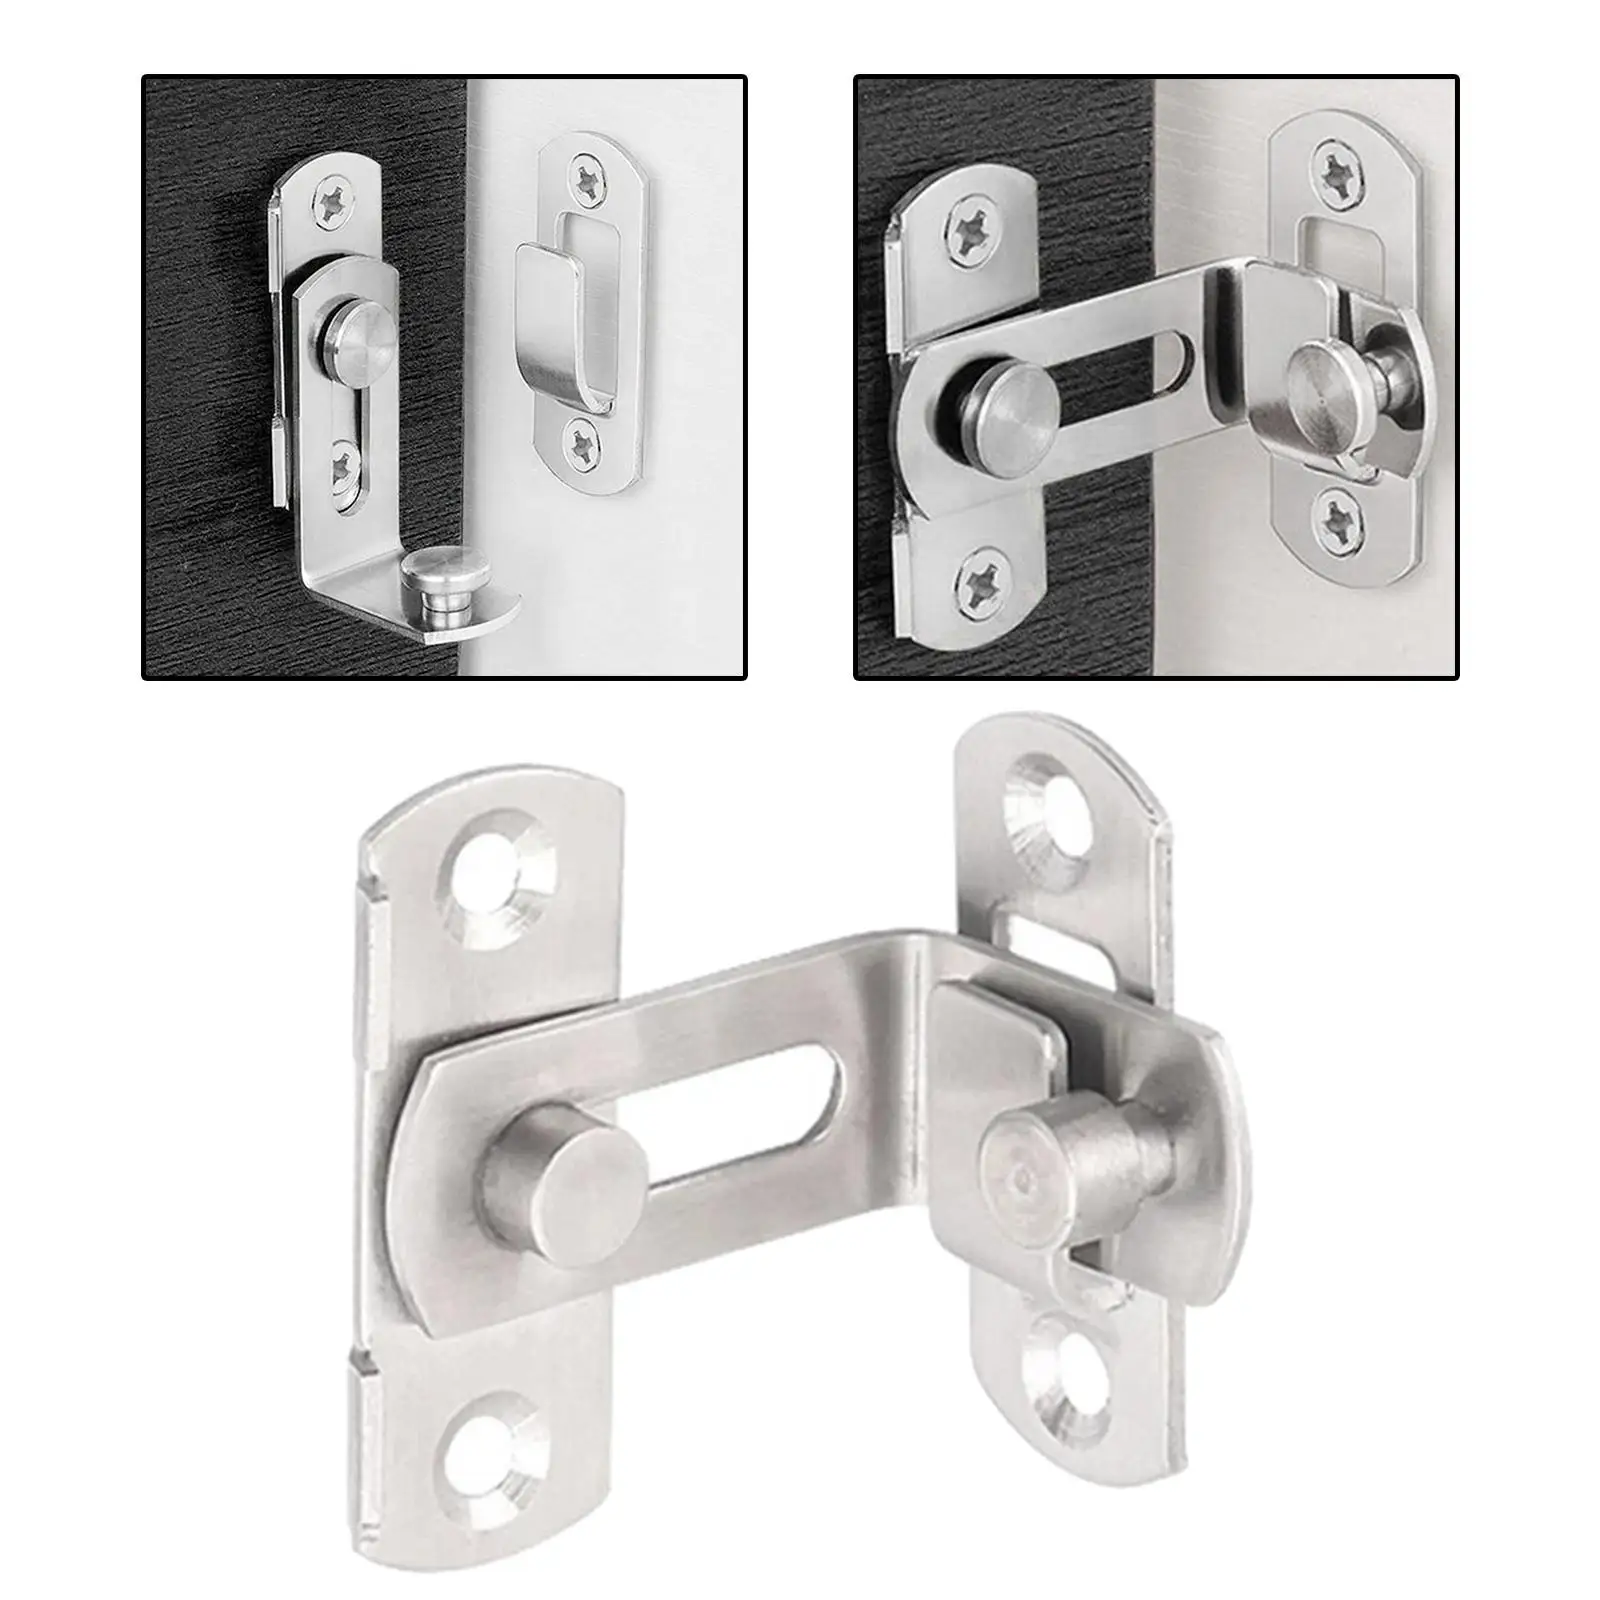 Stainless Steel Door Lock 90 Degree Door Locks for Indoor Outdoor Cabinets Home Garage Bathroom